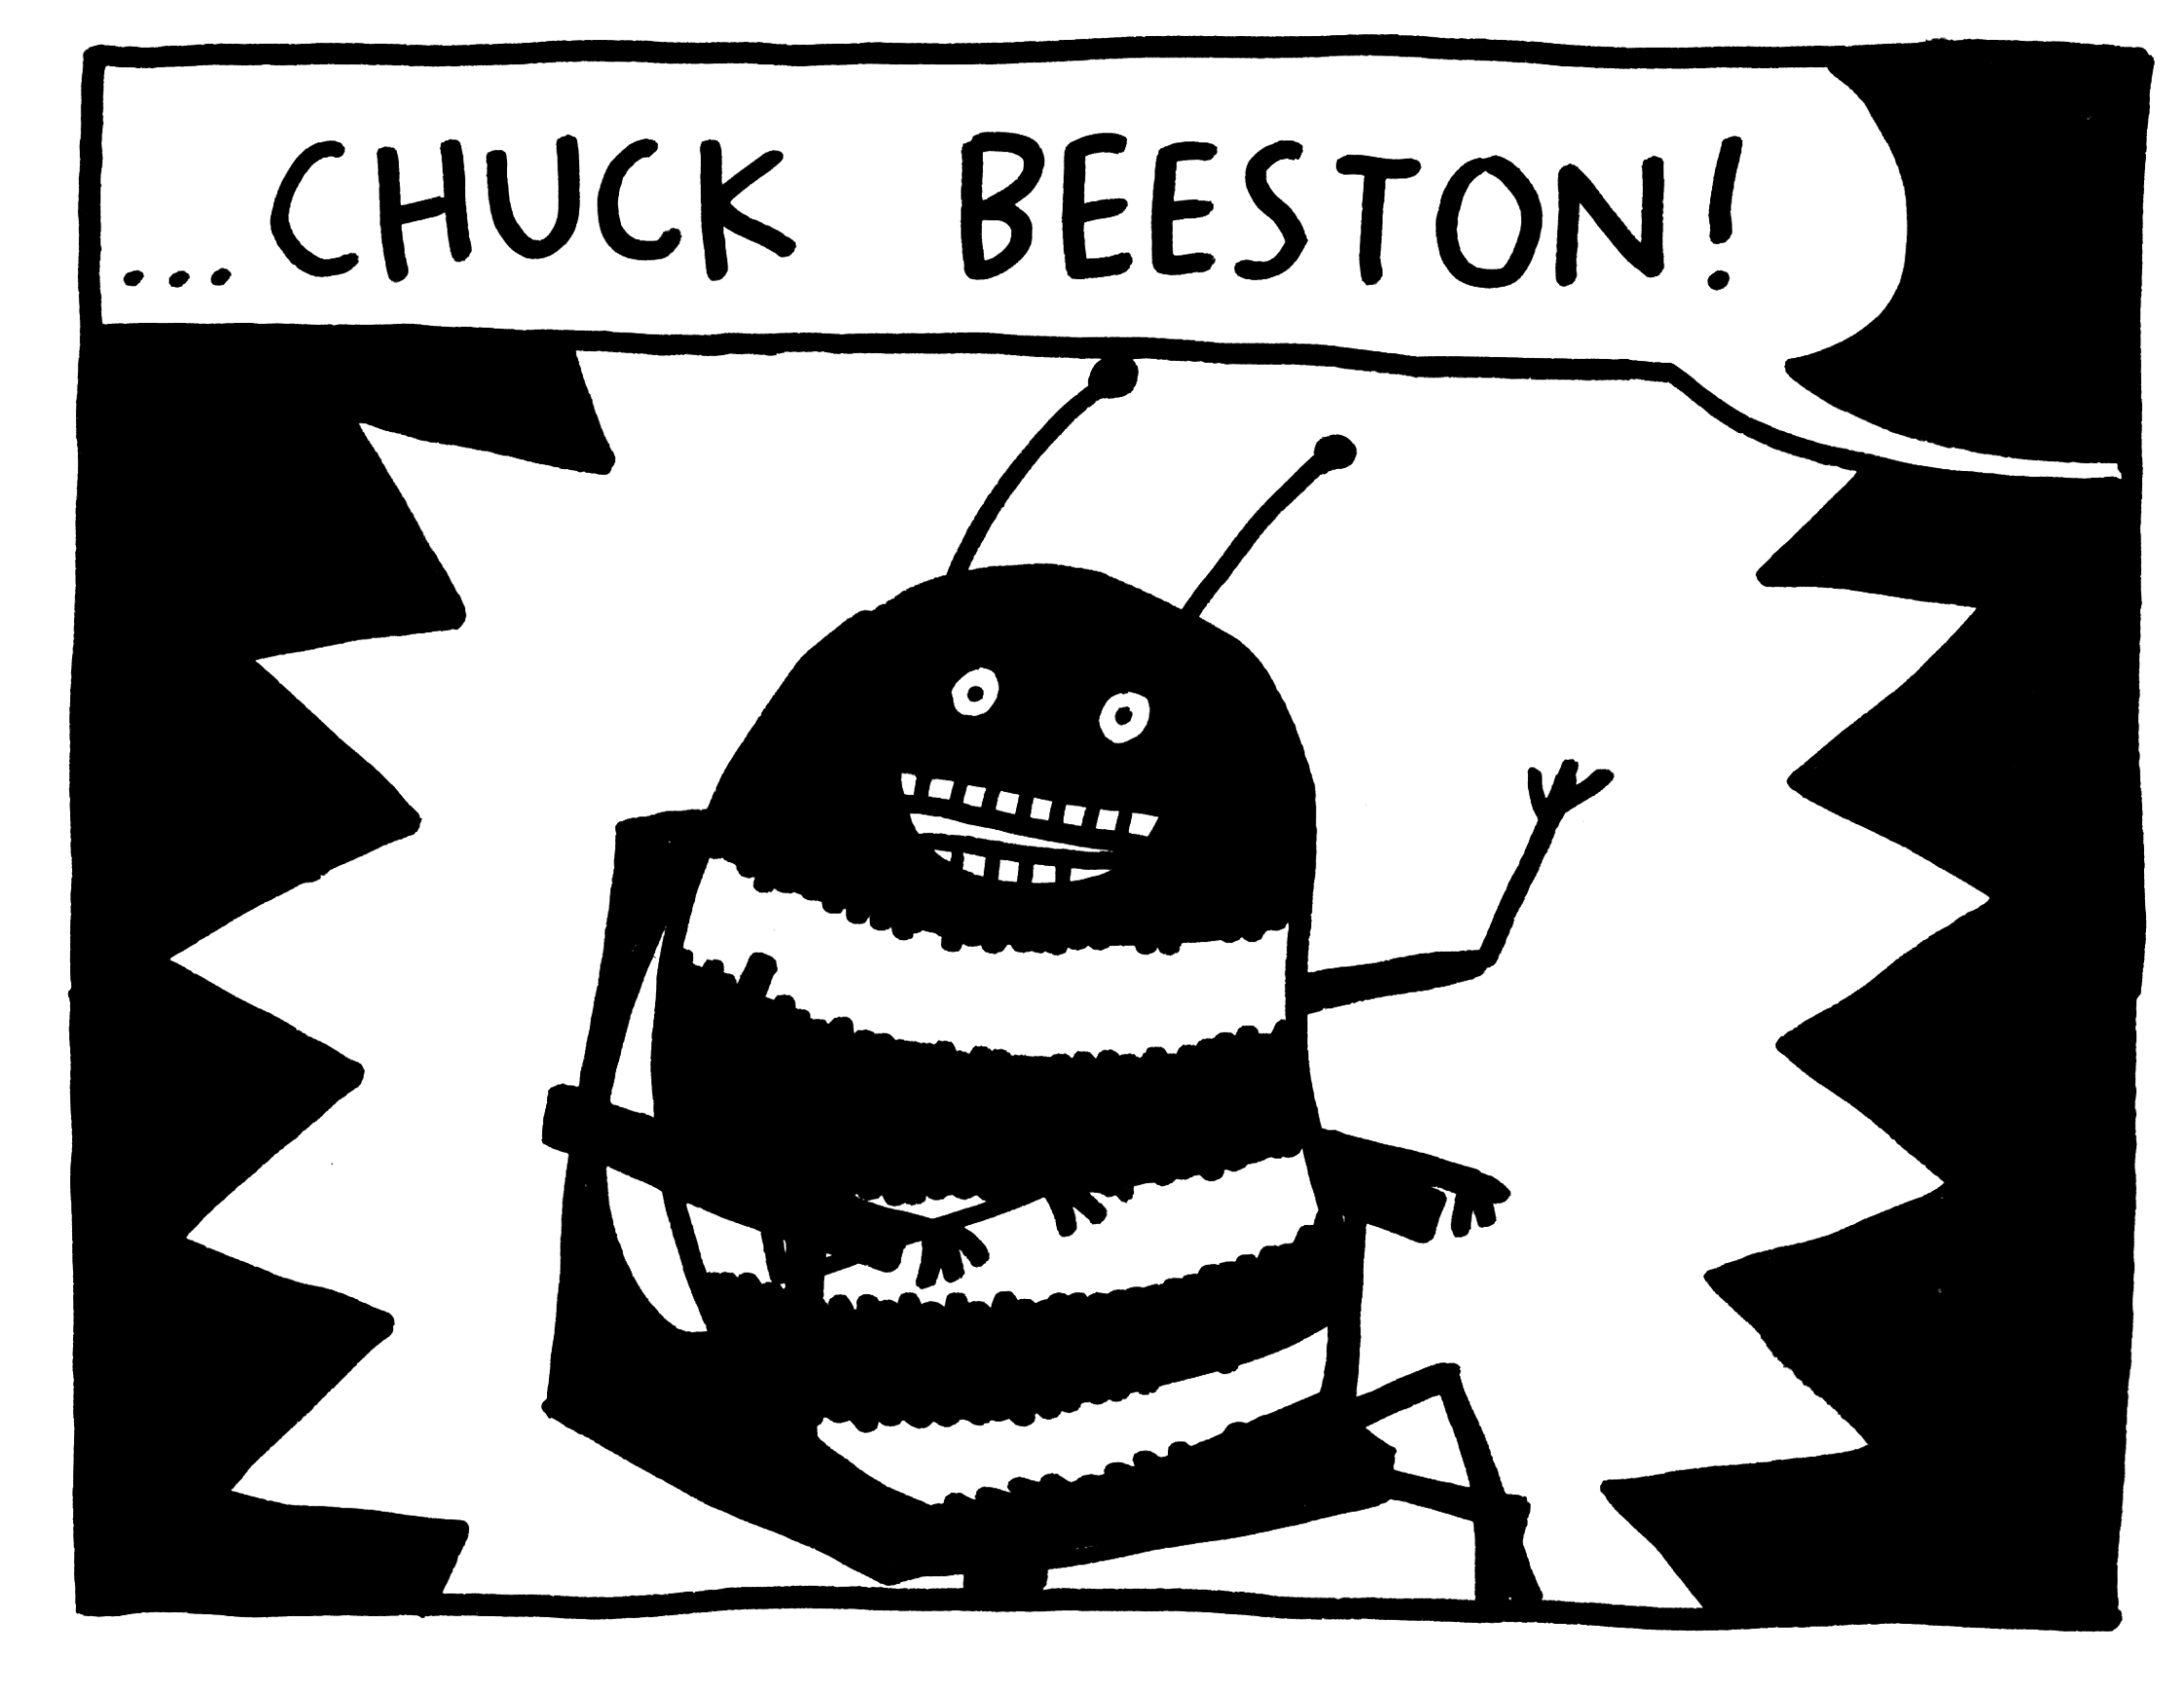 Chuck Beeston